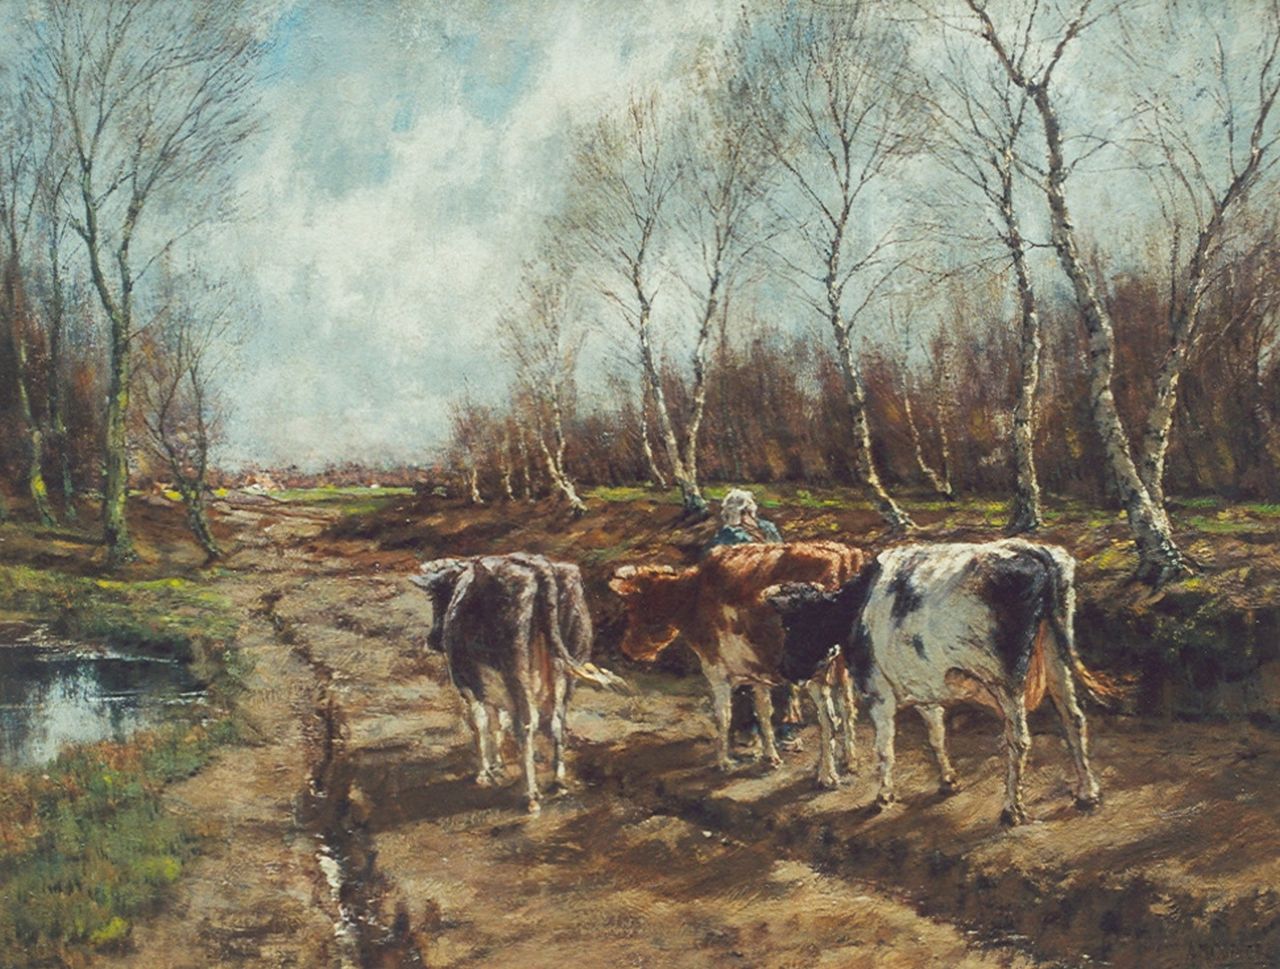 Gorter A.M.  | 'Arnold' Marc Gorter, Koeien in herfstlandschap, olieverf op doek 66,8 x 87,0 cm, gesigneerd rechtsonder